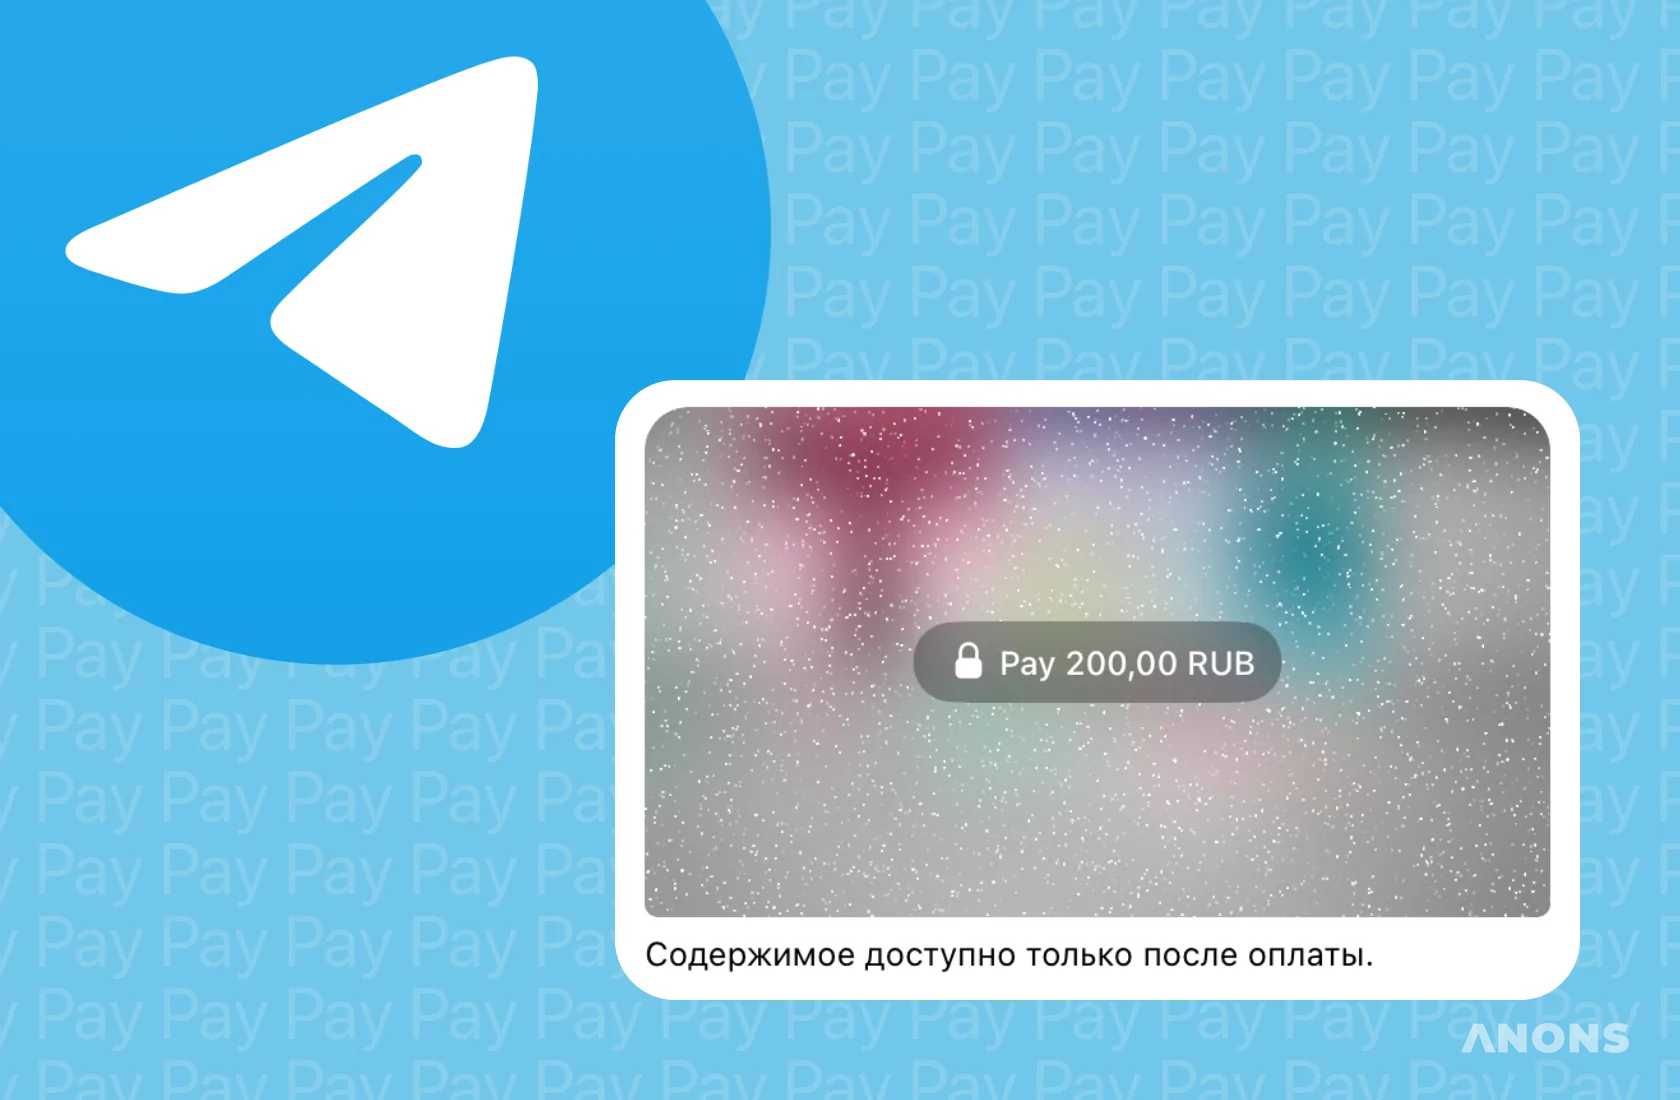 В Telegram появилась возможность публиковать фото с платным доступом